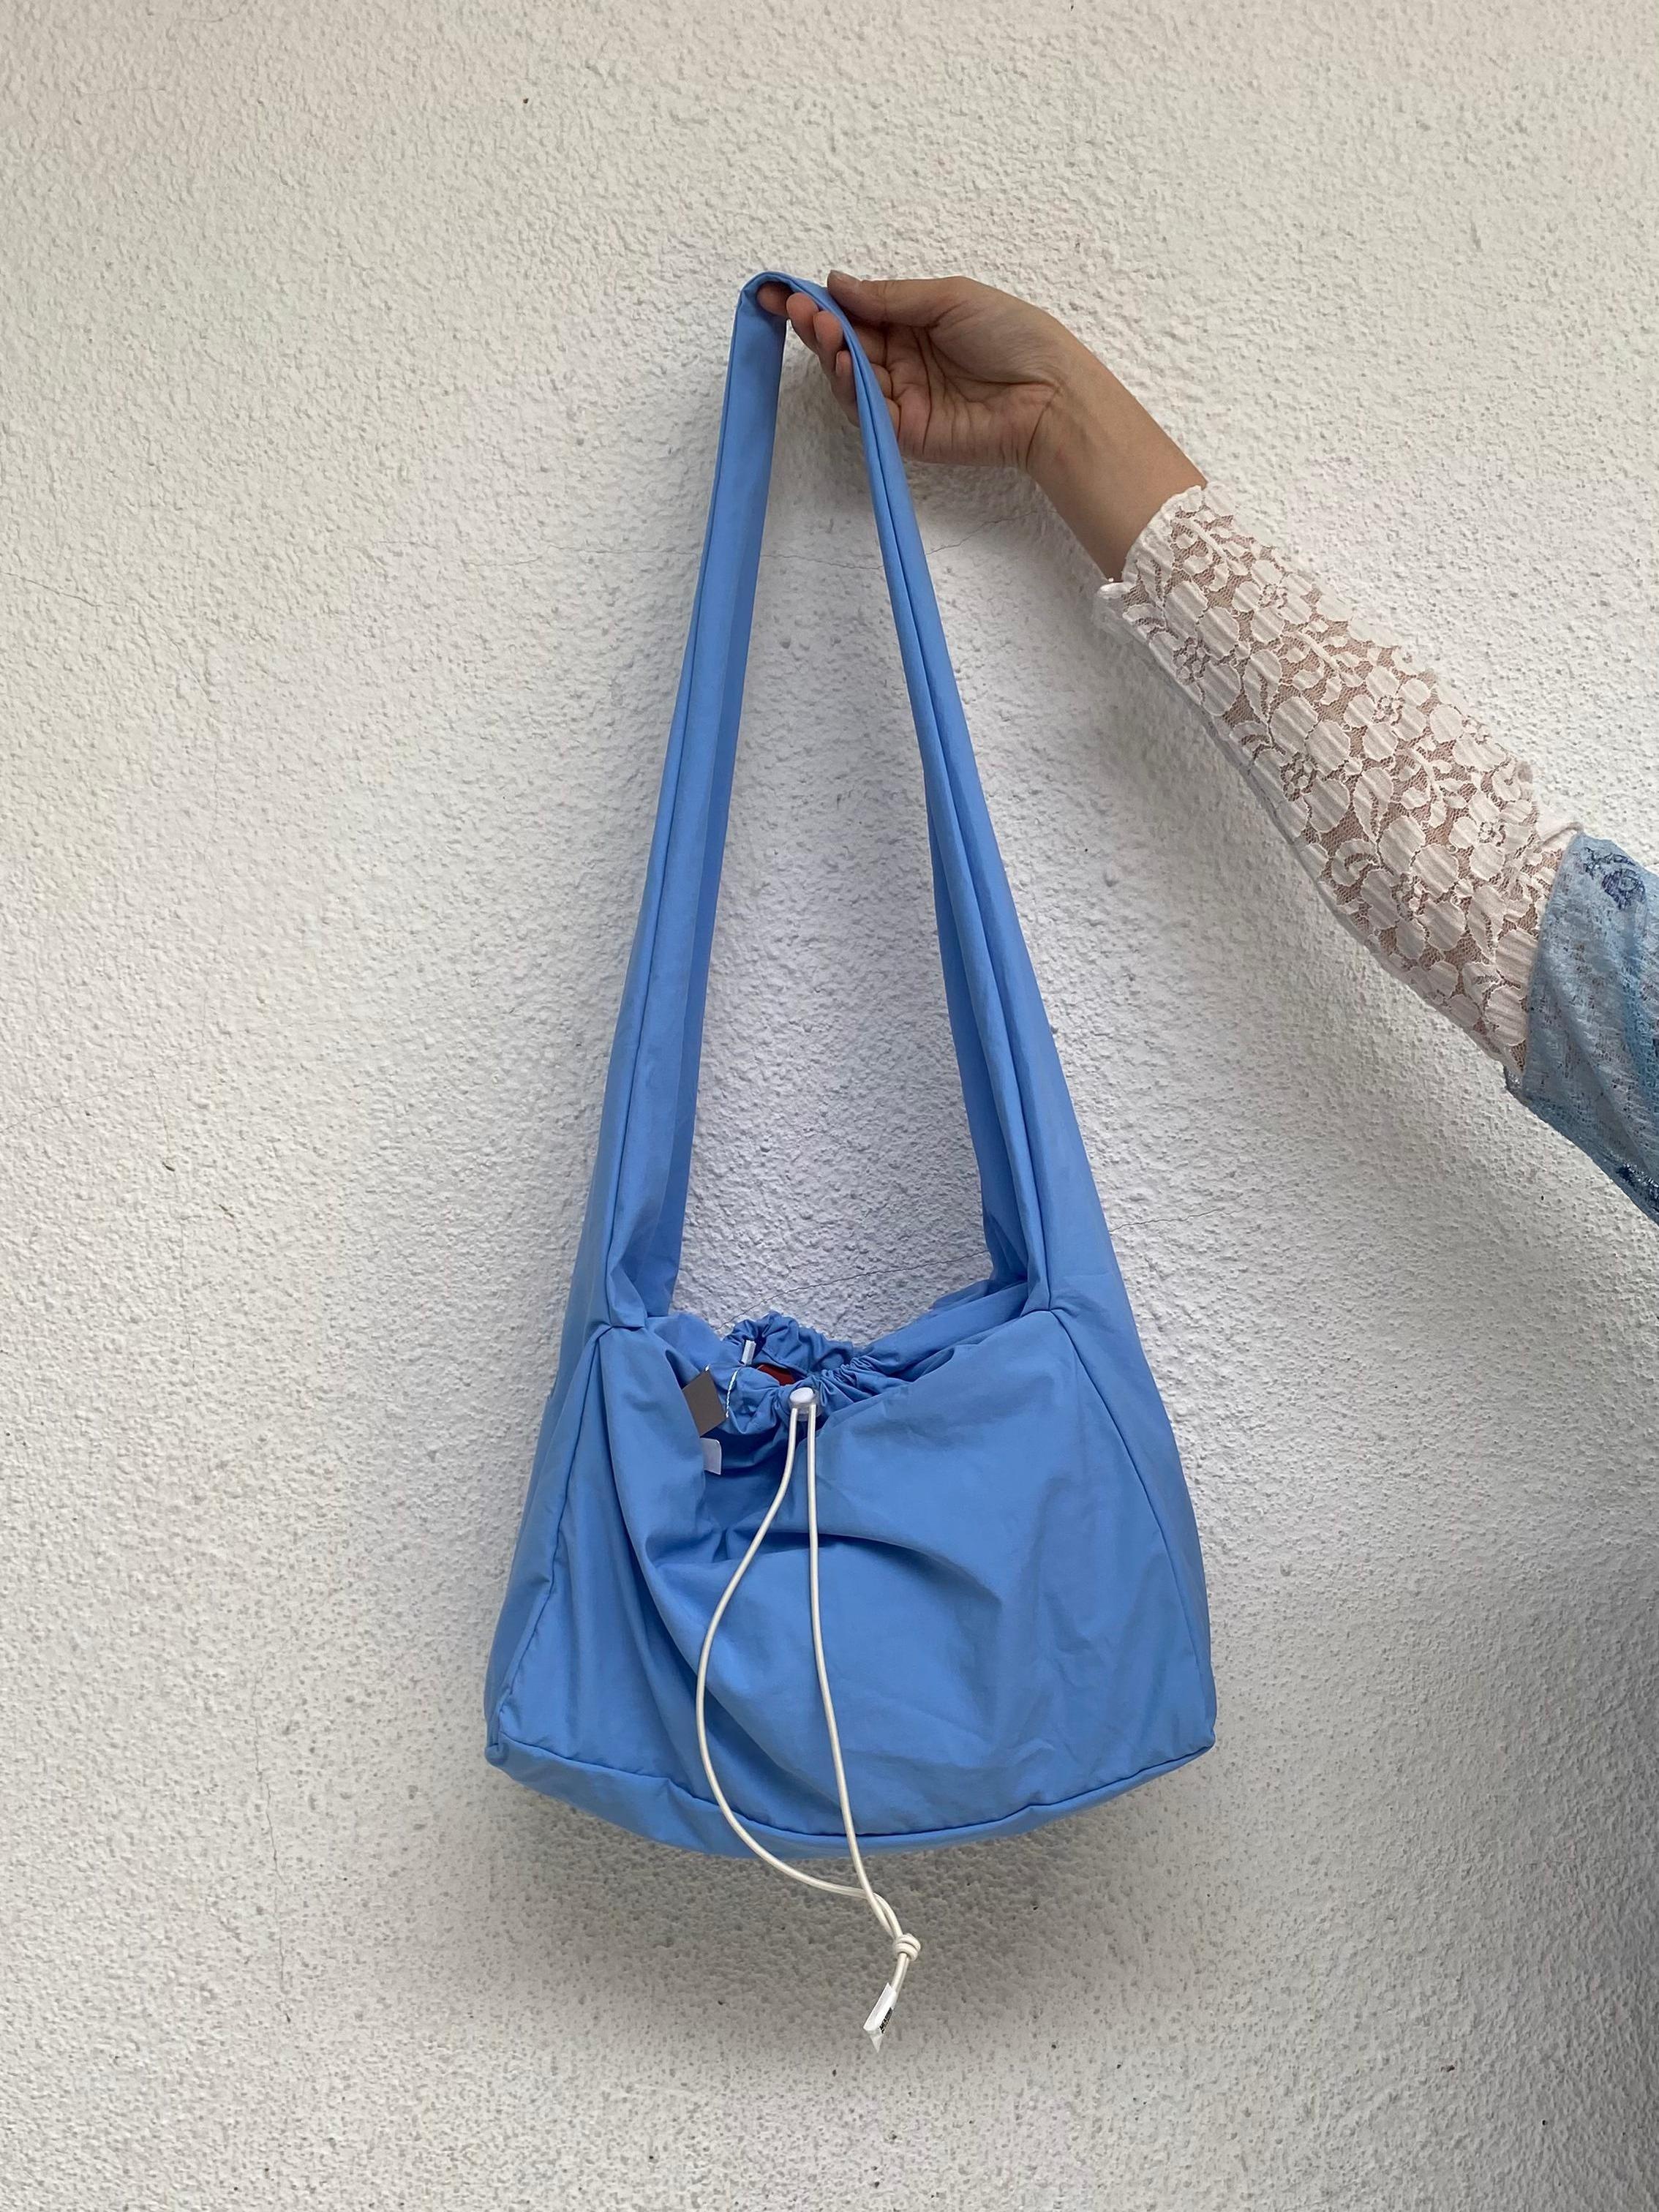 Onigiri Sling Bag Light Sky Blue - Measure Pleasure